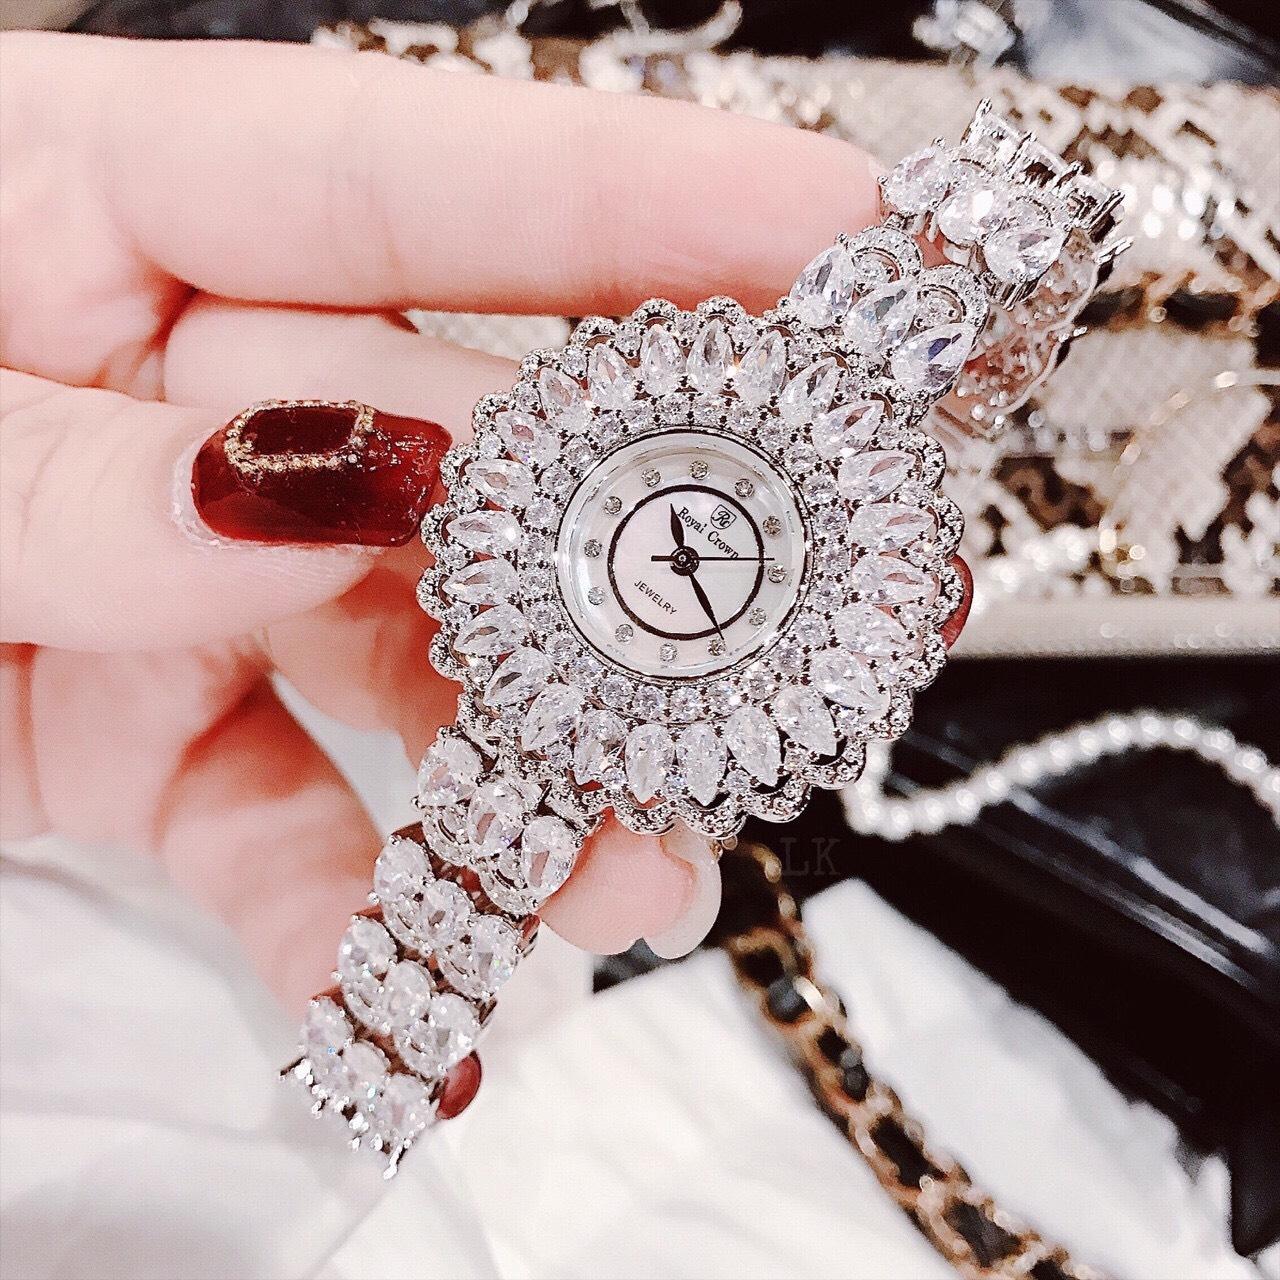 [HCM]Đồng hồ nữ dây kim loại RoyaI Crown mặt đính đá - Vỏ Trắng (Silver) dây đính đá  size 36mm Đồng hồ nữ cao cấp chống nước